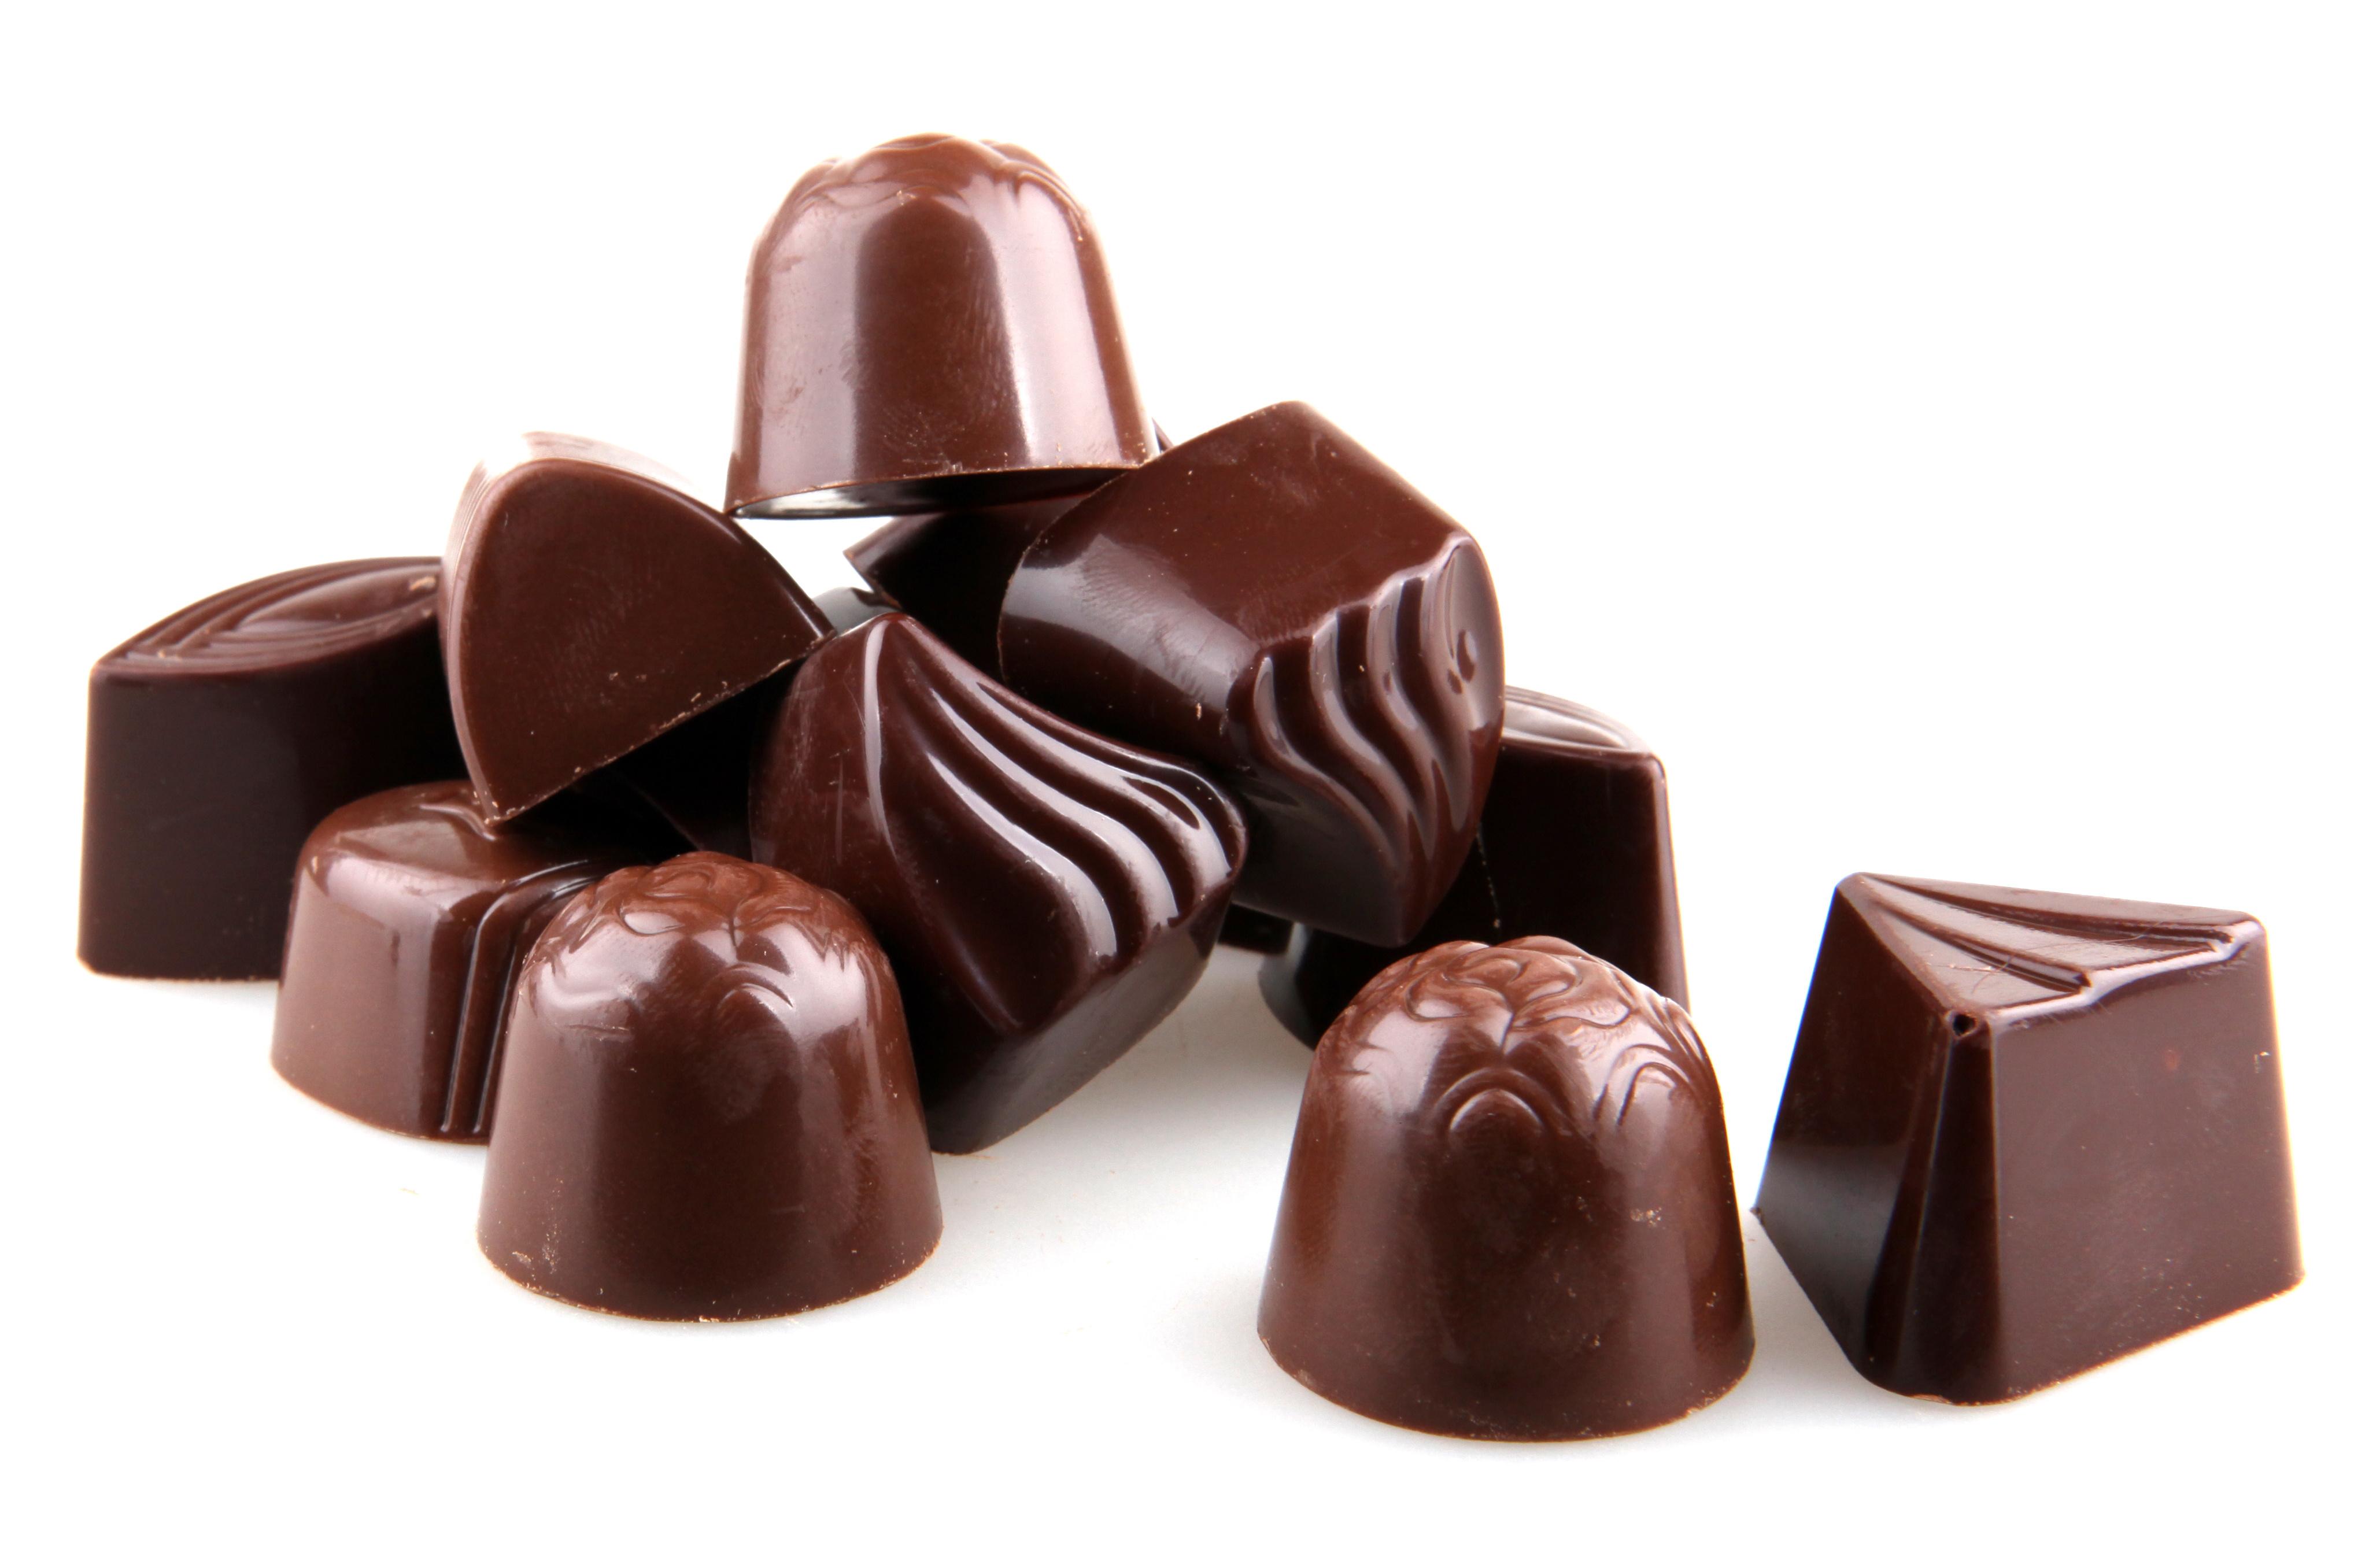 manfaat cokelat untuk kesehatan